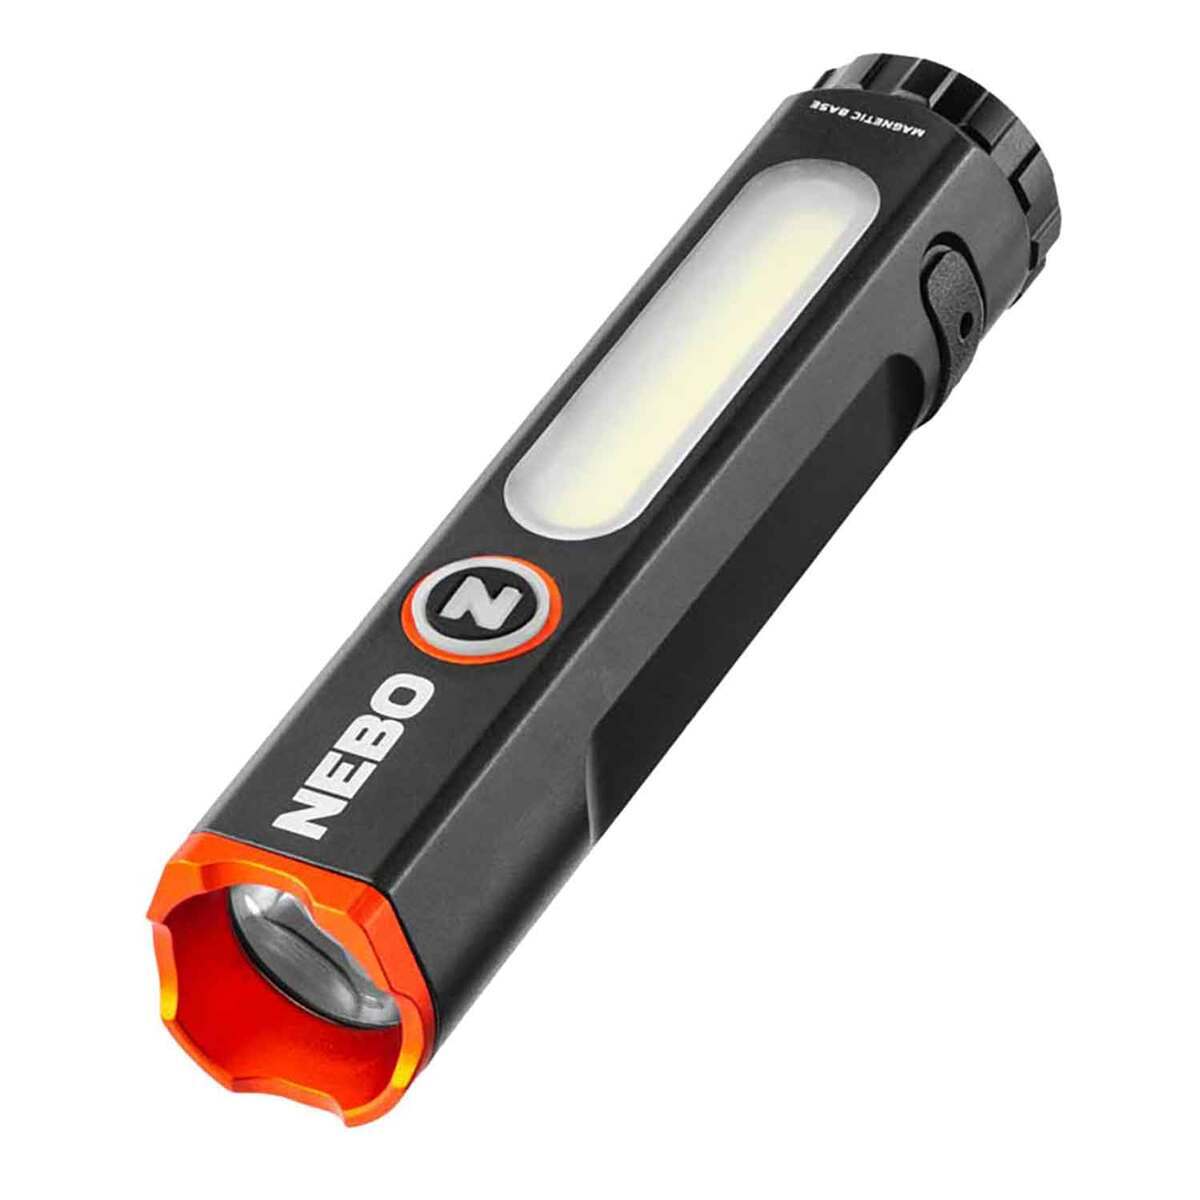 https://www.sportsmans.com/medias/nebo-mini-larry-led-compact-combo-flashlight-1830089-1.jpg?context=bWFzdGVyfGltYWdlc3w0Njk3M3xpbWFnZS9qcGVnfGgxNy9oYTgvMTE1NDQ0MzE5ODQ2NzAvMTIwMC1jb252ZXJzaW9uRm9ybWF0X2Jhc2UtY29udmVyc2lvbkZvcm1hdF9zbXctMTgzMDA4OS0xLmpwZ3wxNWNjNzdmNTRlZmE0OGEyMjA1YzU2Yzk3YWQzYmM4YjM4MTk4MmRmZjc0N2FmOWU0ZTkzNzY1NDlhNjMzYWRj